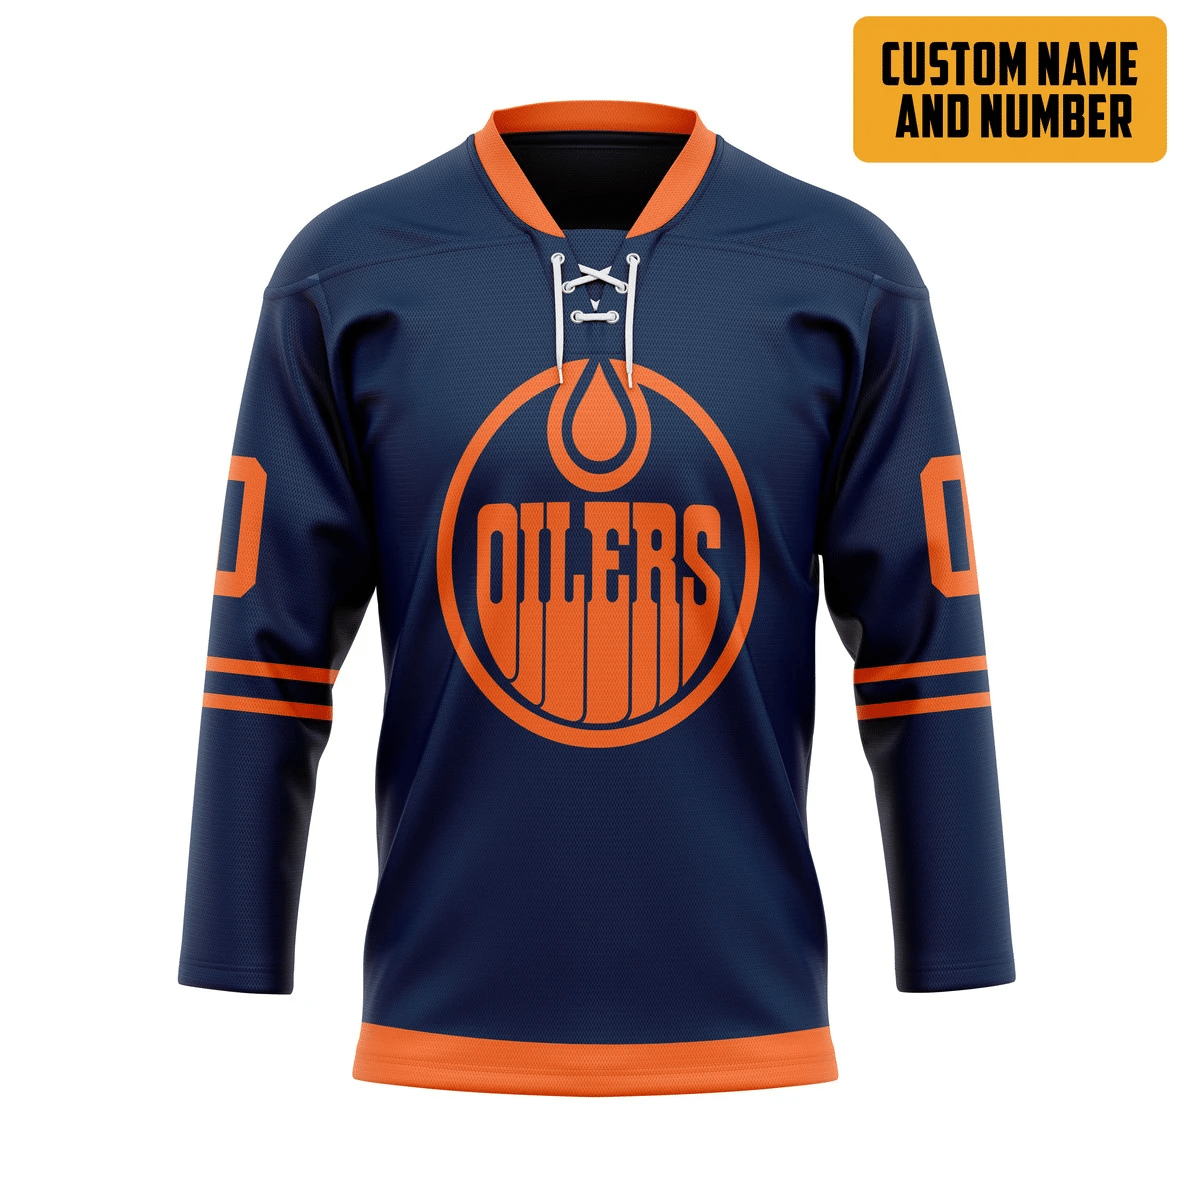 It's only $50 so don't miss out - Be sure to pick up a new hockey shirt today! 351